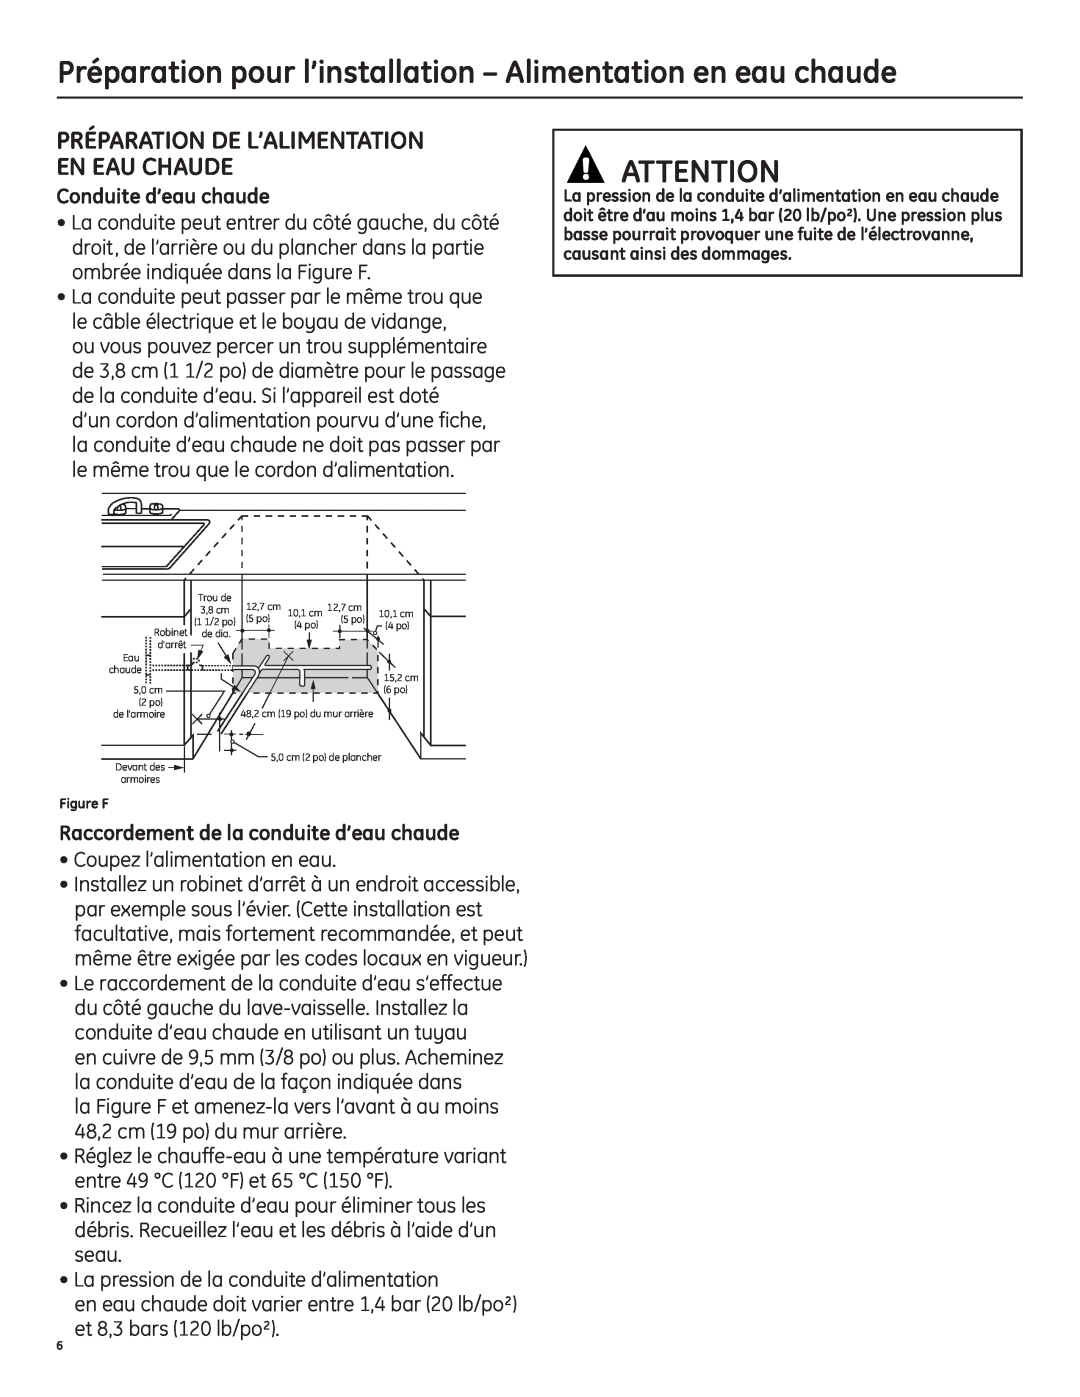 GE 206C1559P195 installation instructions Préparation De L’Alimentation En Eau Chaude, Conduite d’eau chaude 